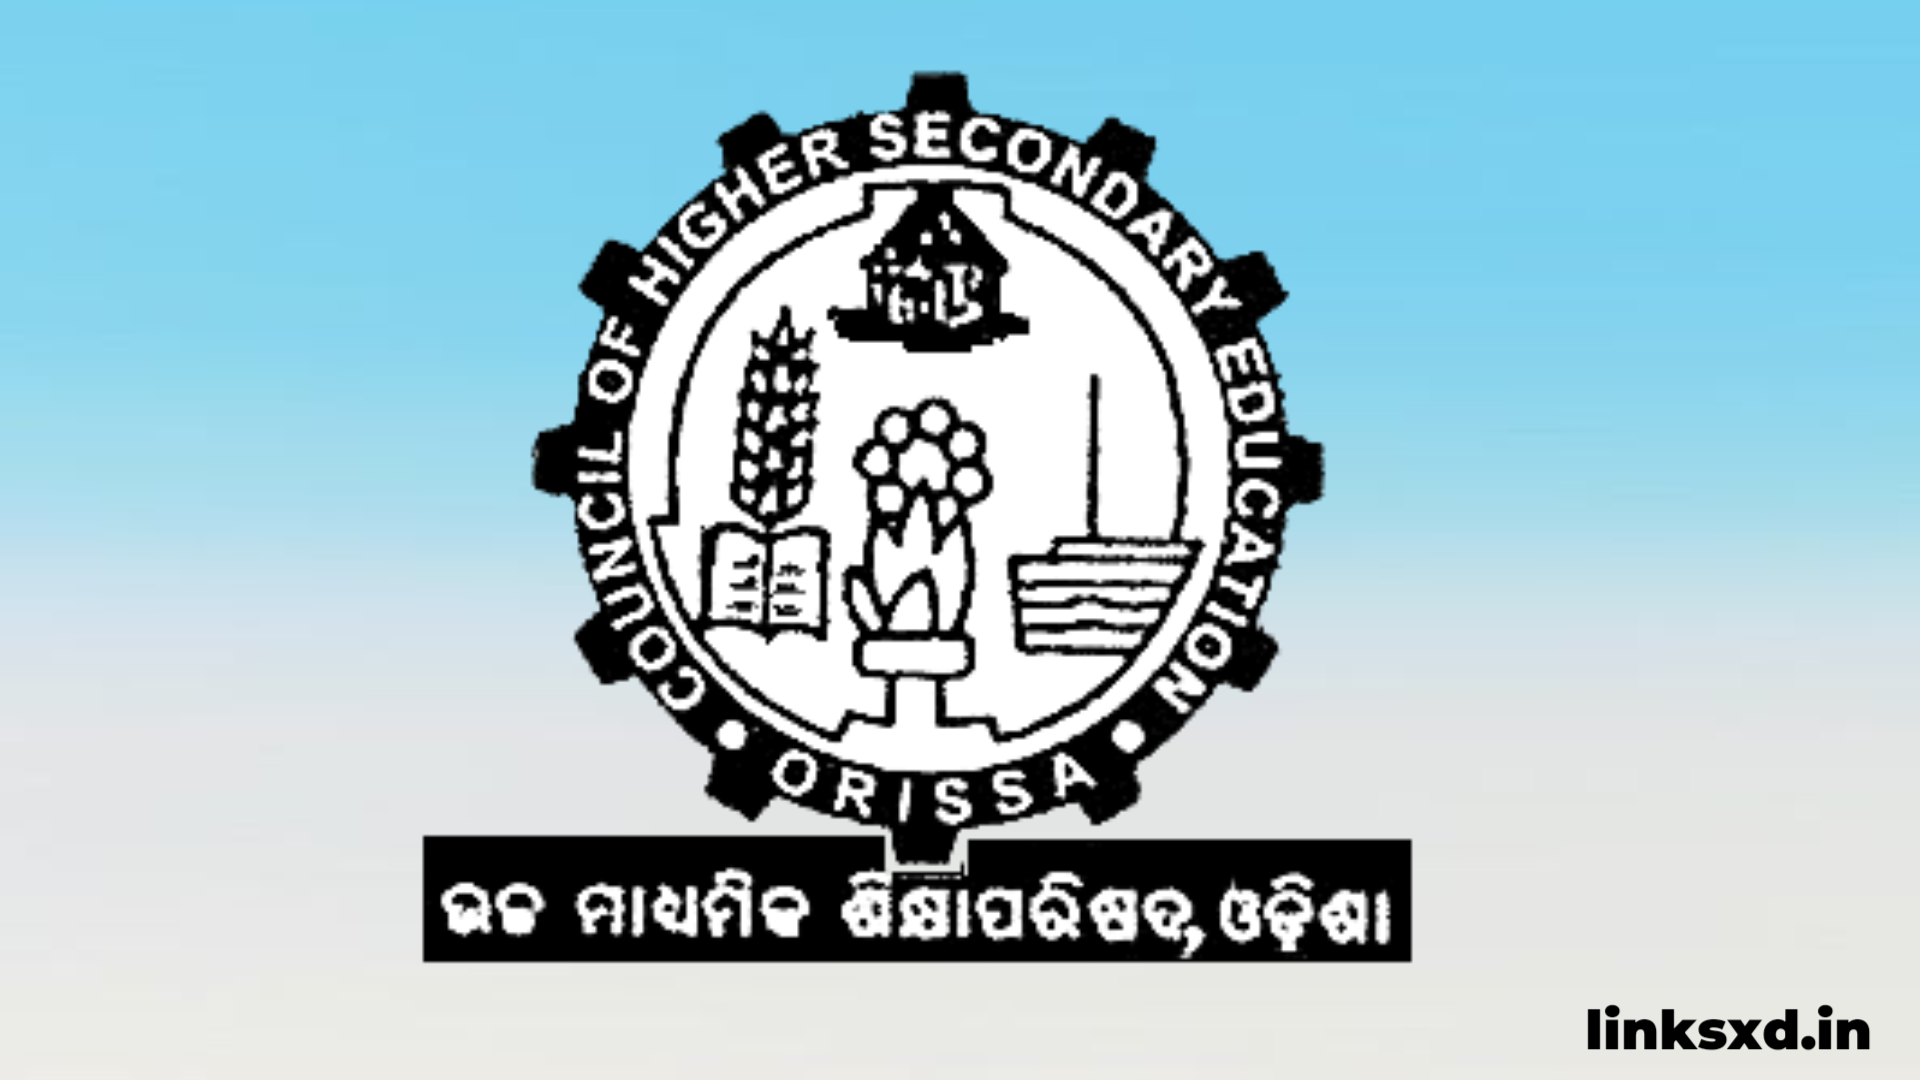 Odisha board of secondary education